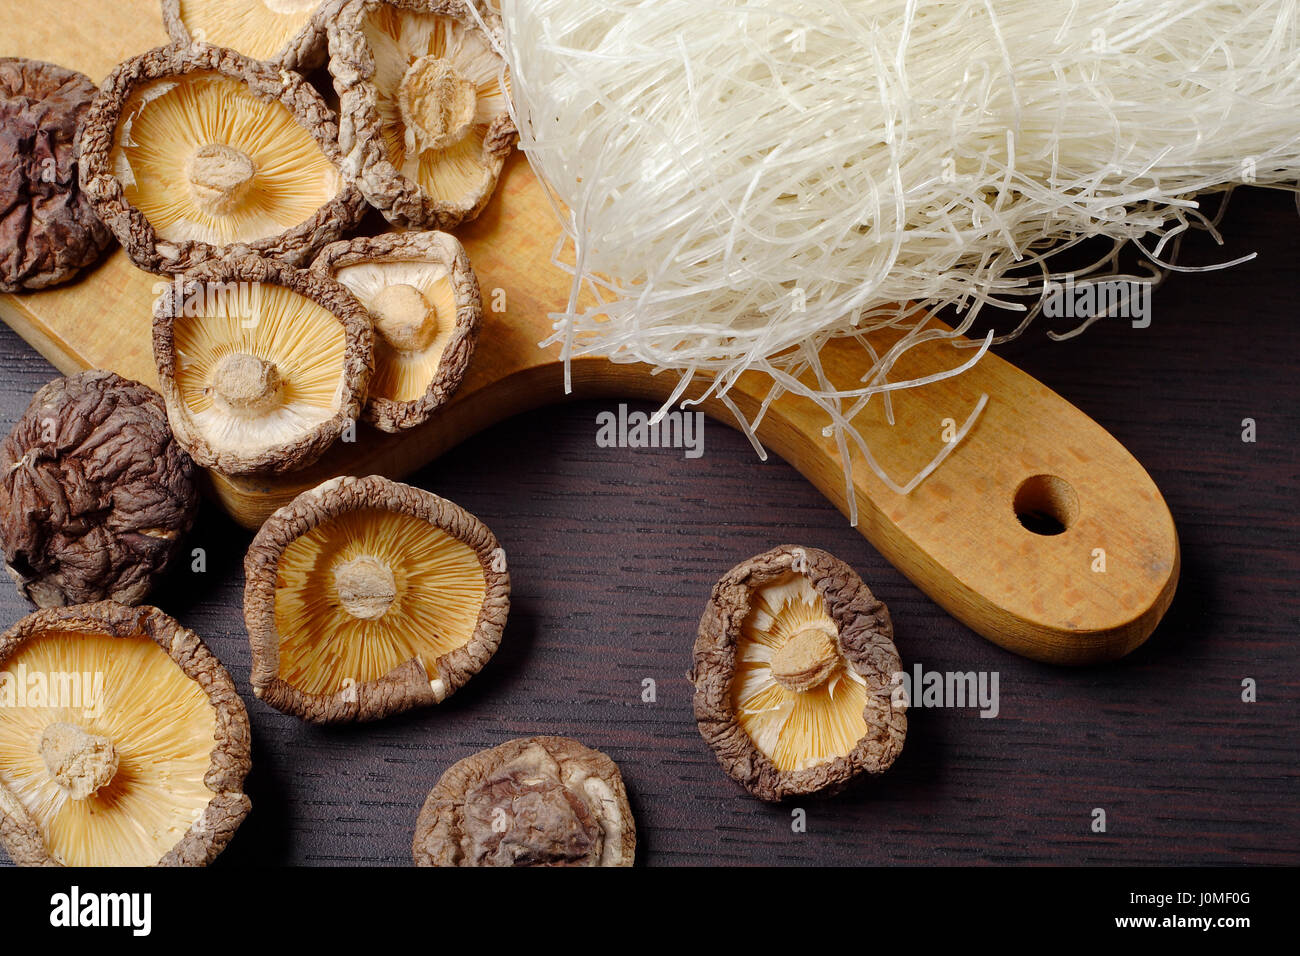 La vie toujours avec des champignons shiitake (Poku) (Lentinus edodes) et le riz nodles. Banque D'Images